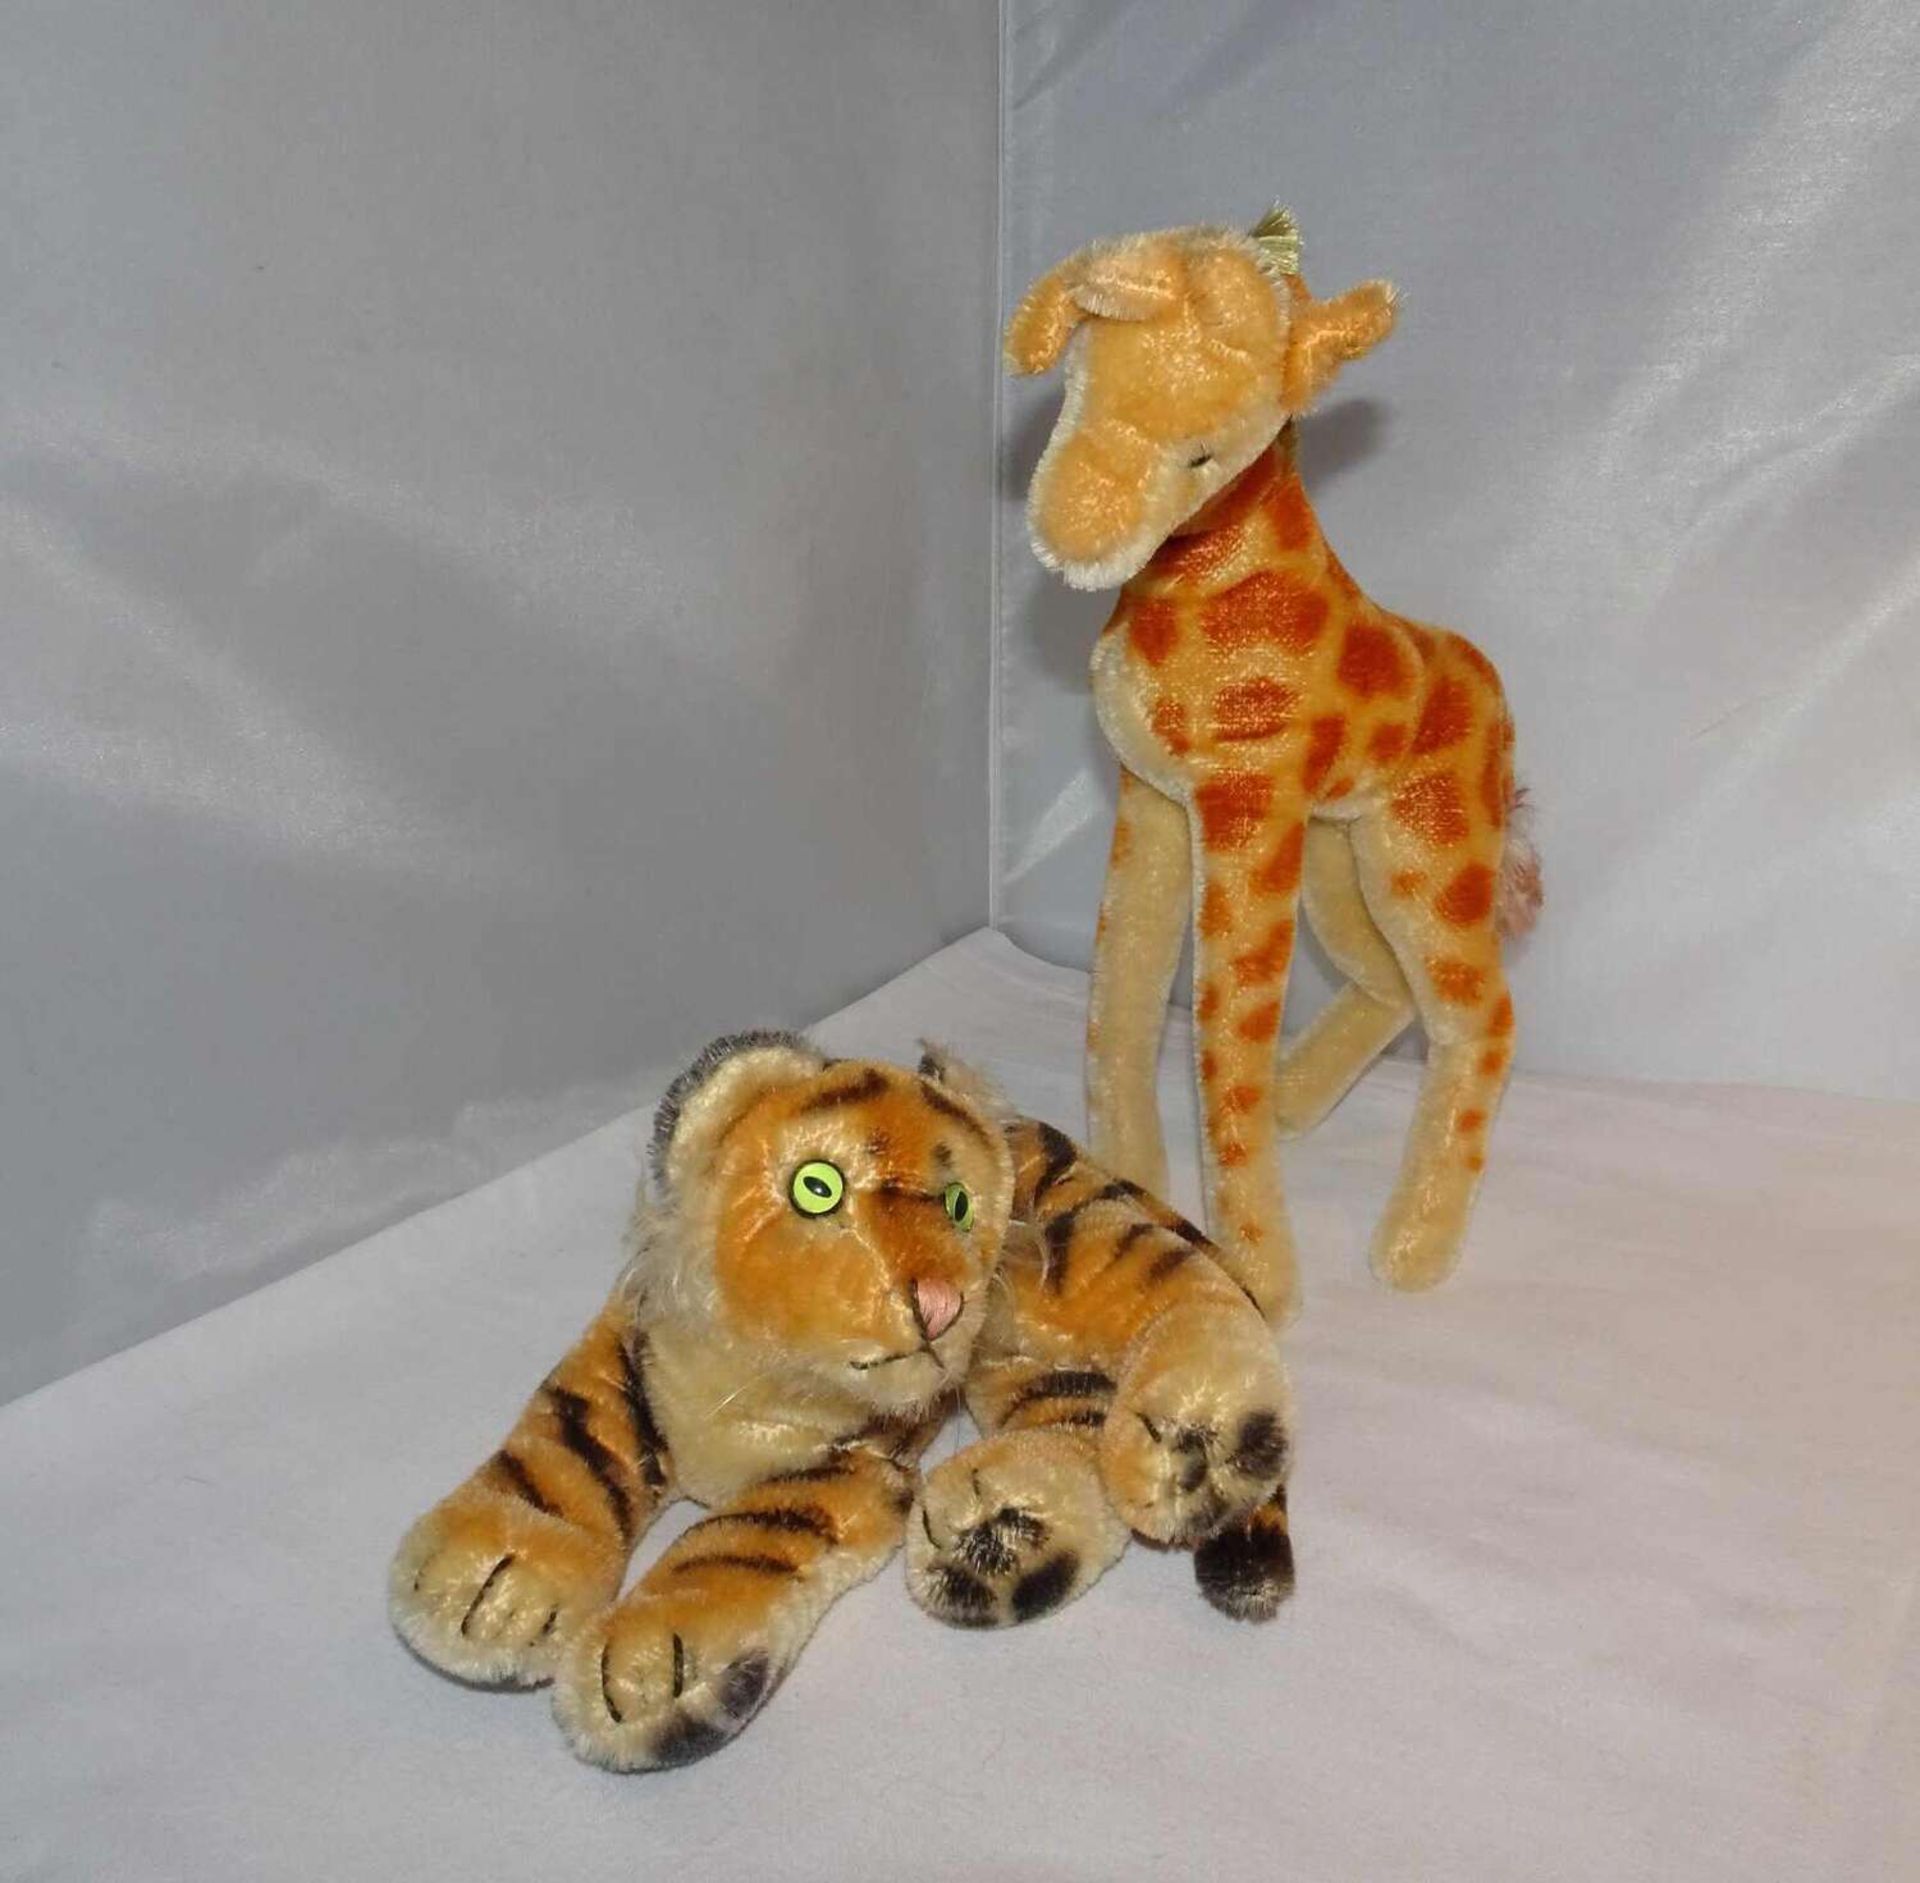 2 Steifftiere, ca. 60er Jahre, 1x Tiger mit Knopf, sowie 1x Giraffe mit Knopf und Fahne. 2 Steiff